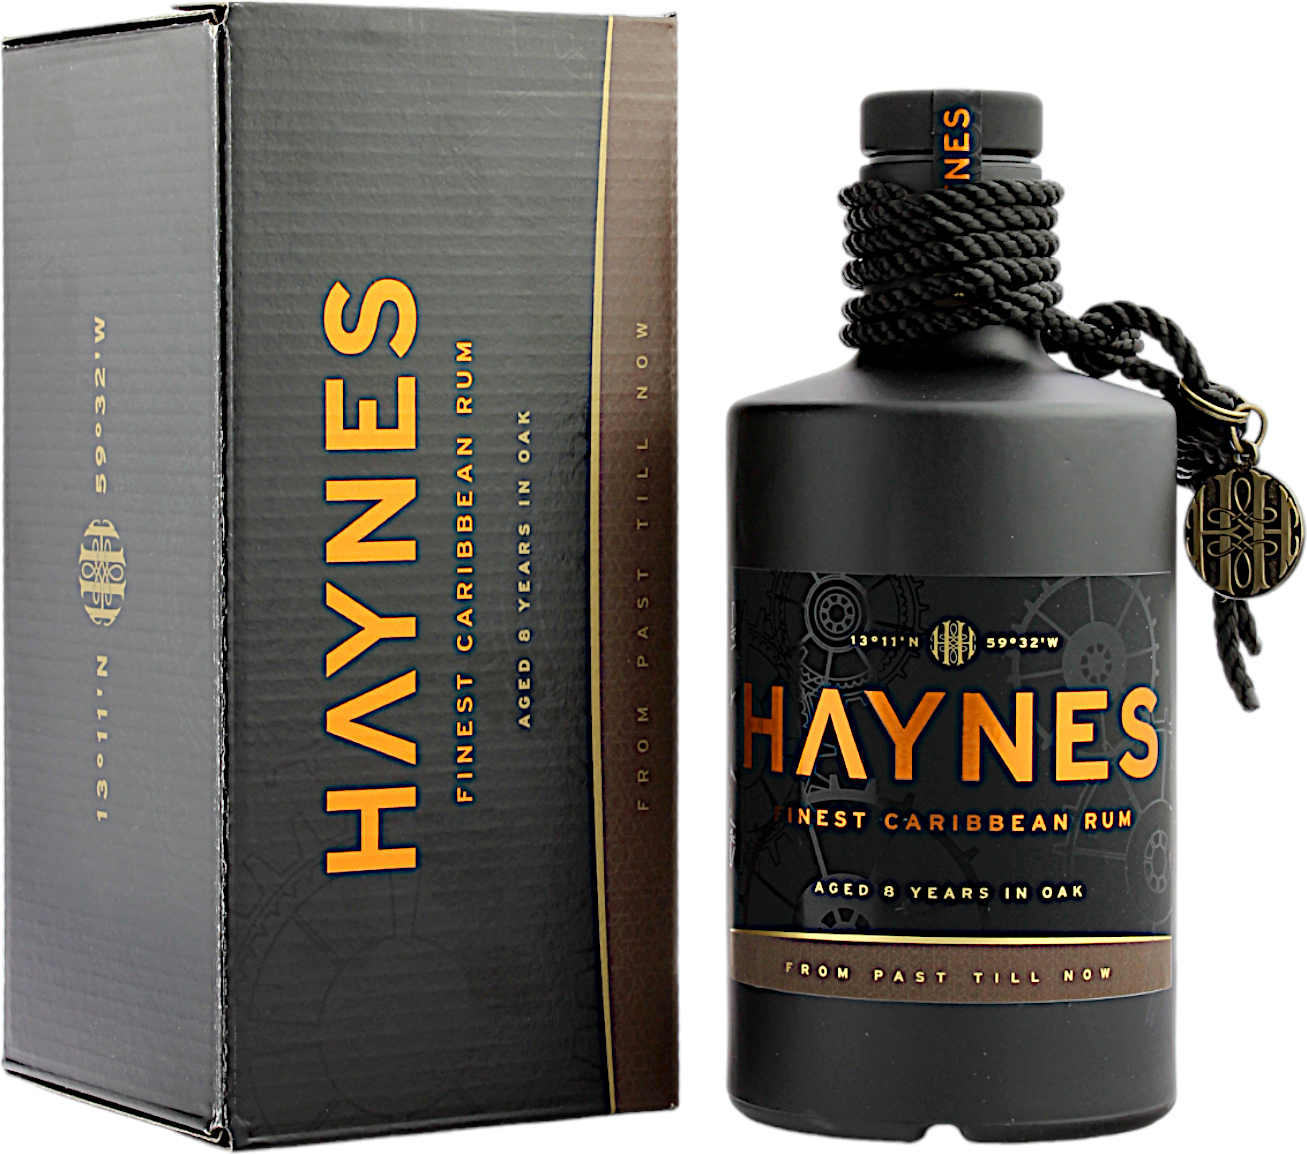 HAYNES Rum 40.0% 0,5l